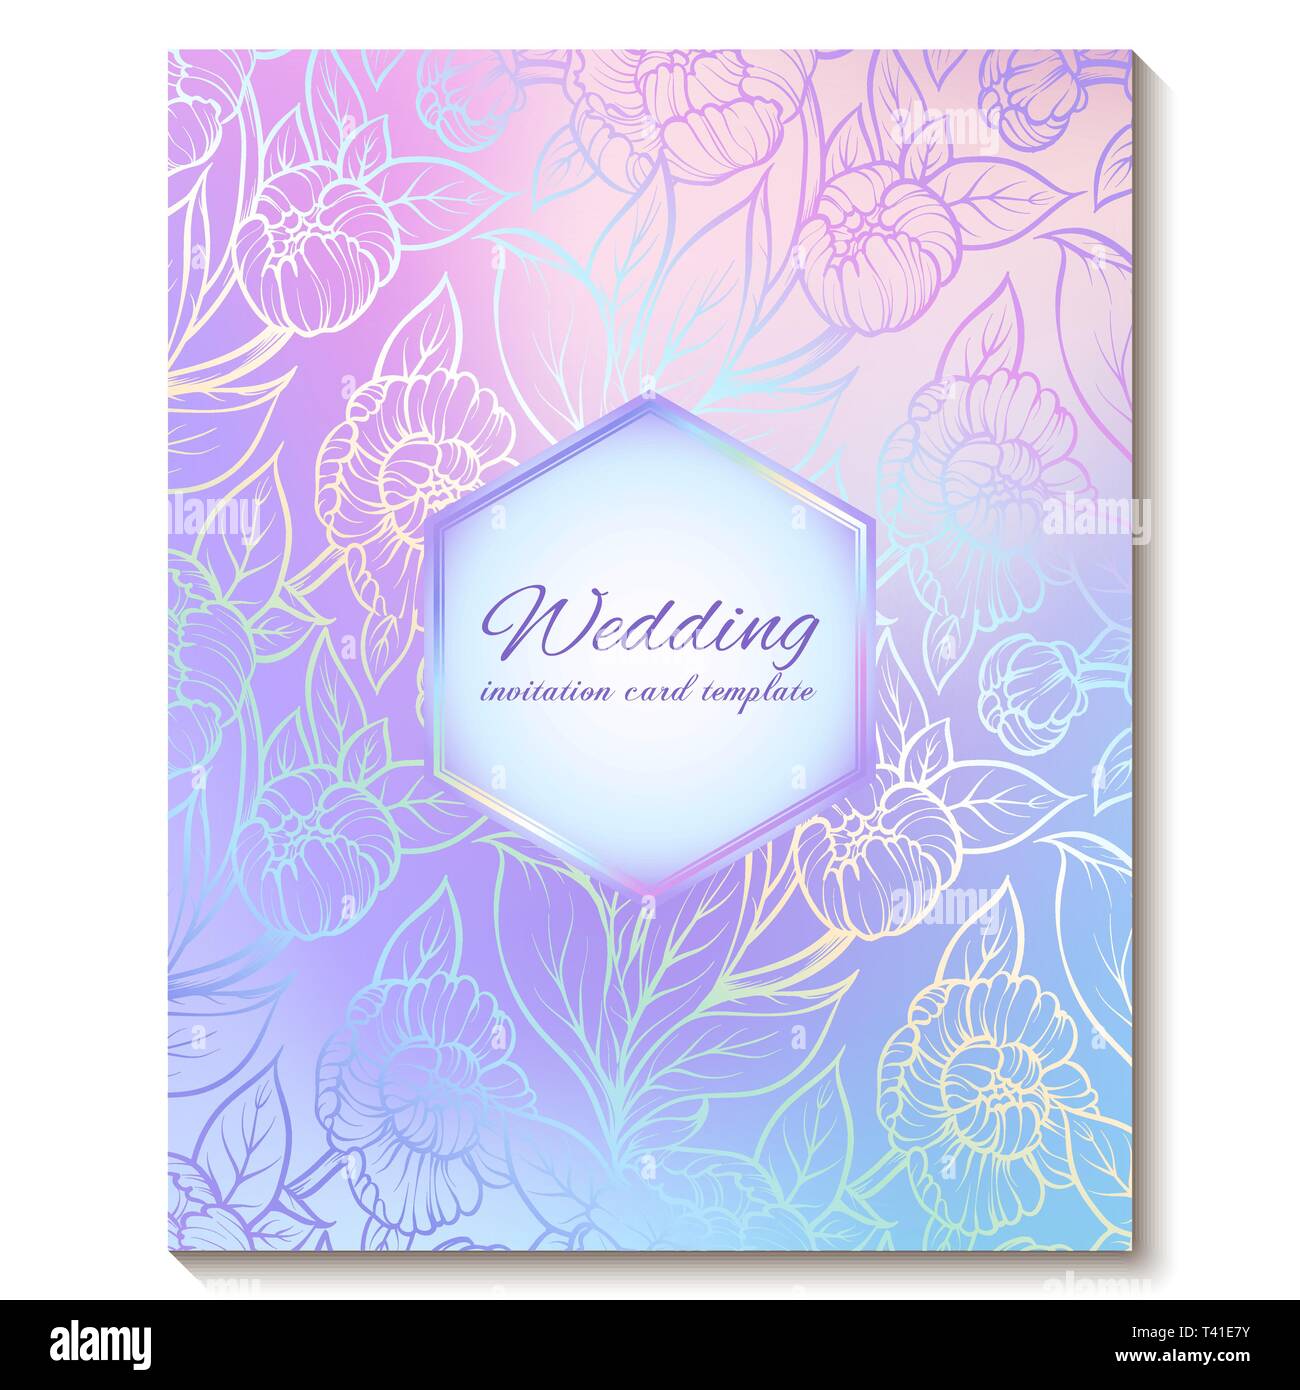 Bunte Pastell blau violett rosa geblümten helle Einladungskarte mit Platz für Text. Abstrakte aquarelle Magic kühle Farben Hand gezeichnet Pfingstrose Blüten Stock Vektor